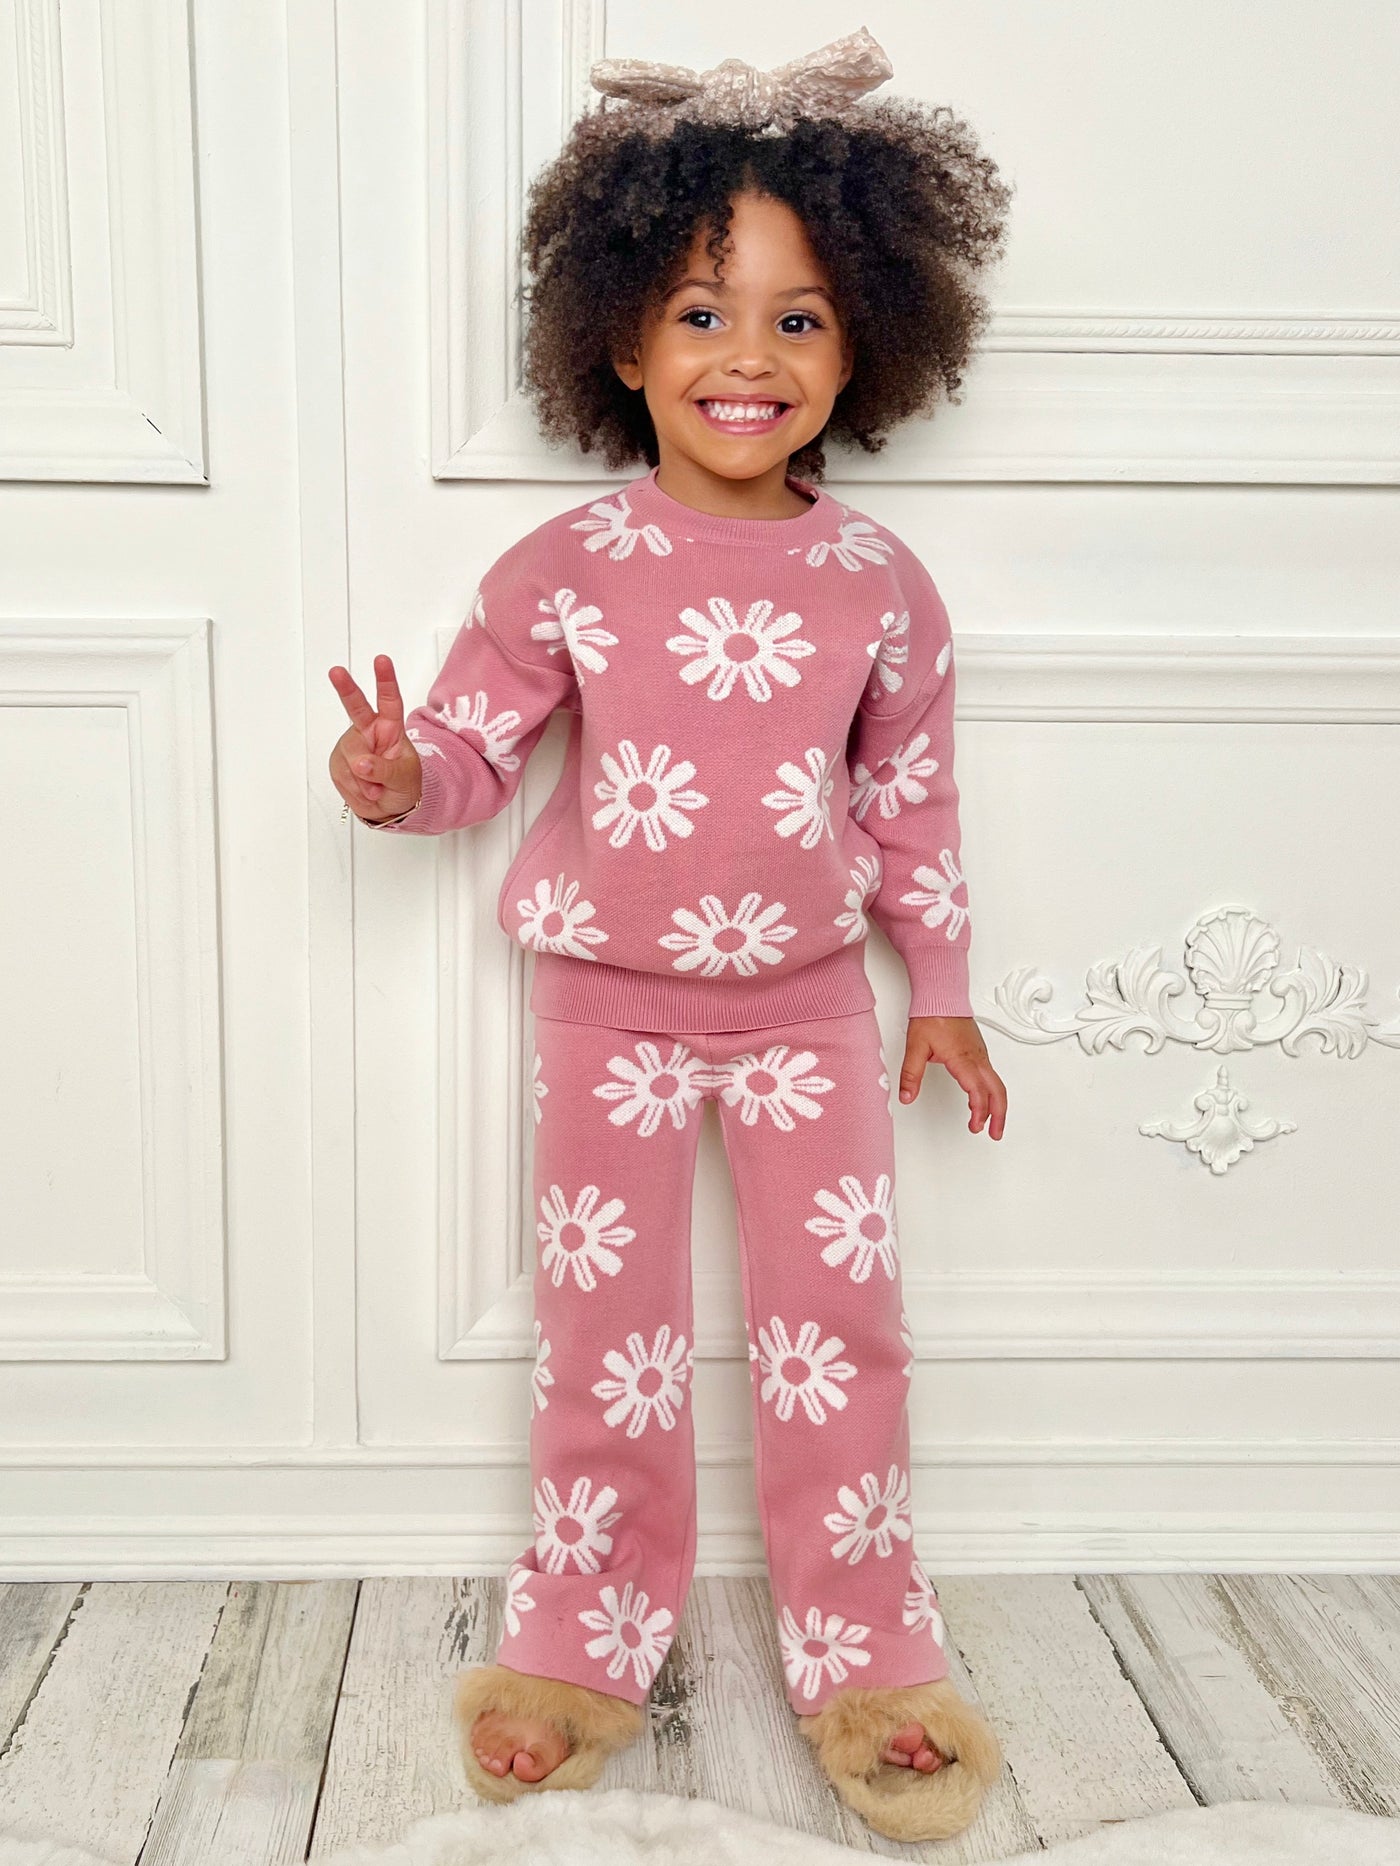 Mia Belle Girls Pink Knit Flower Sweatpants Set | Cute Winter OutfitsMia Belle Girls Pink Knit Flower Sweatpants Set | Cute Winter Outfits